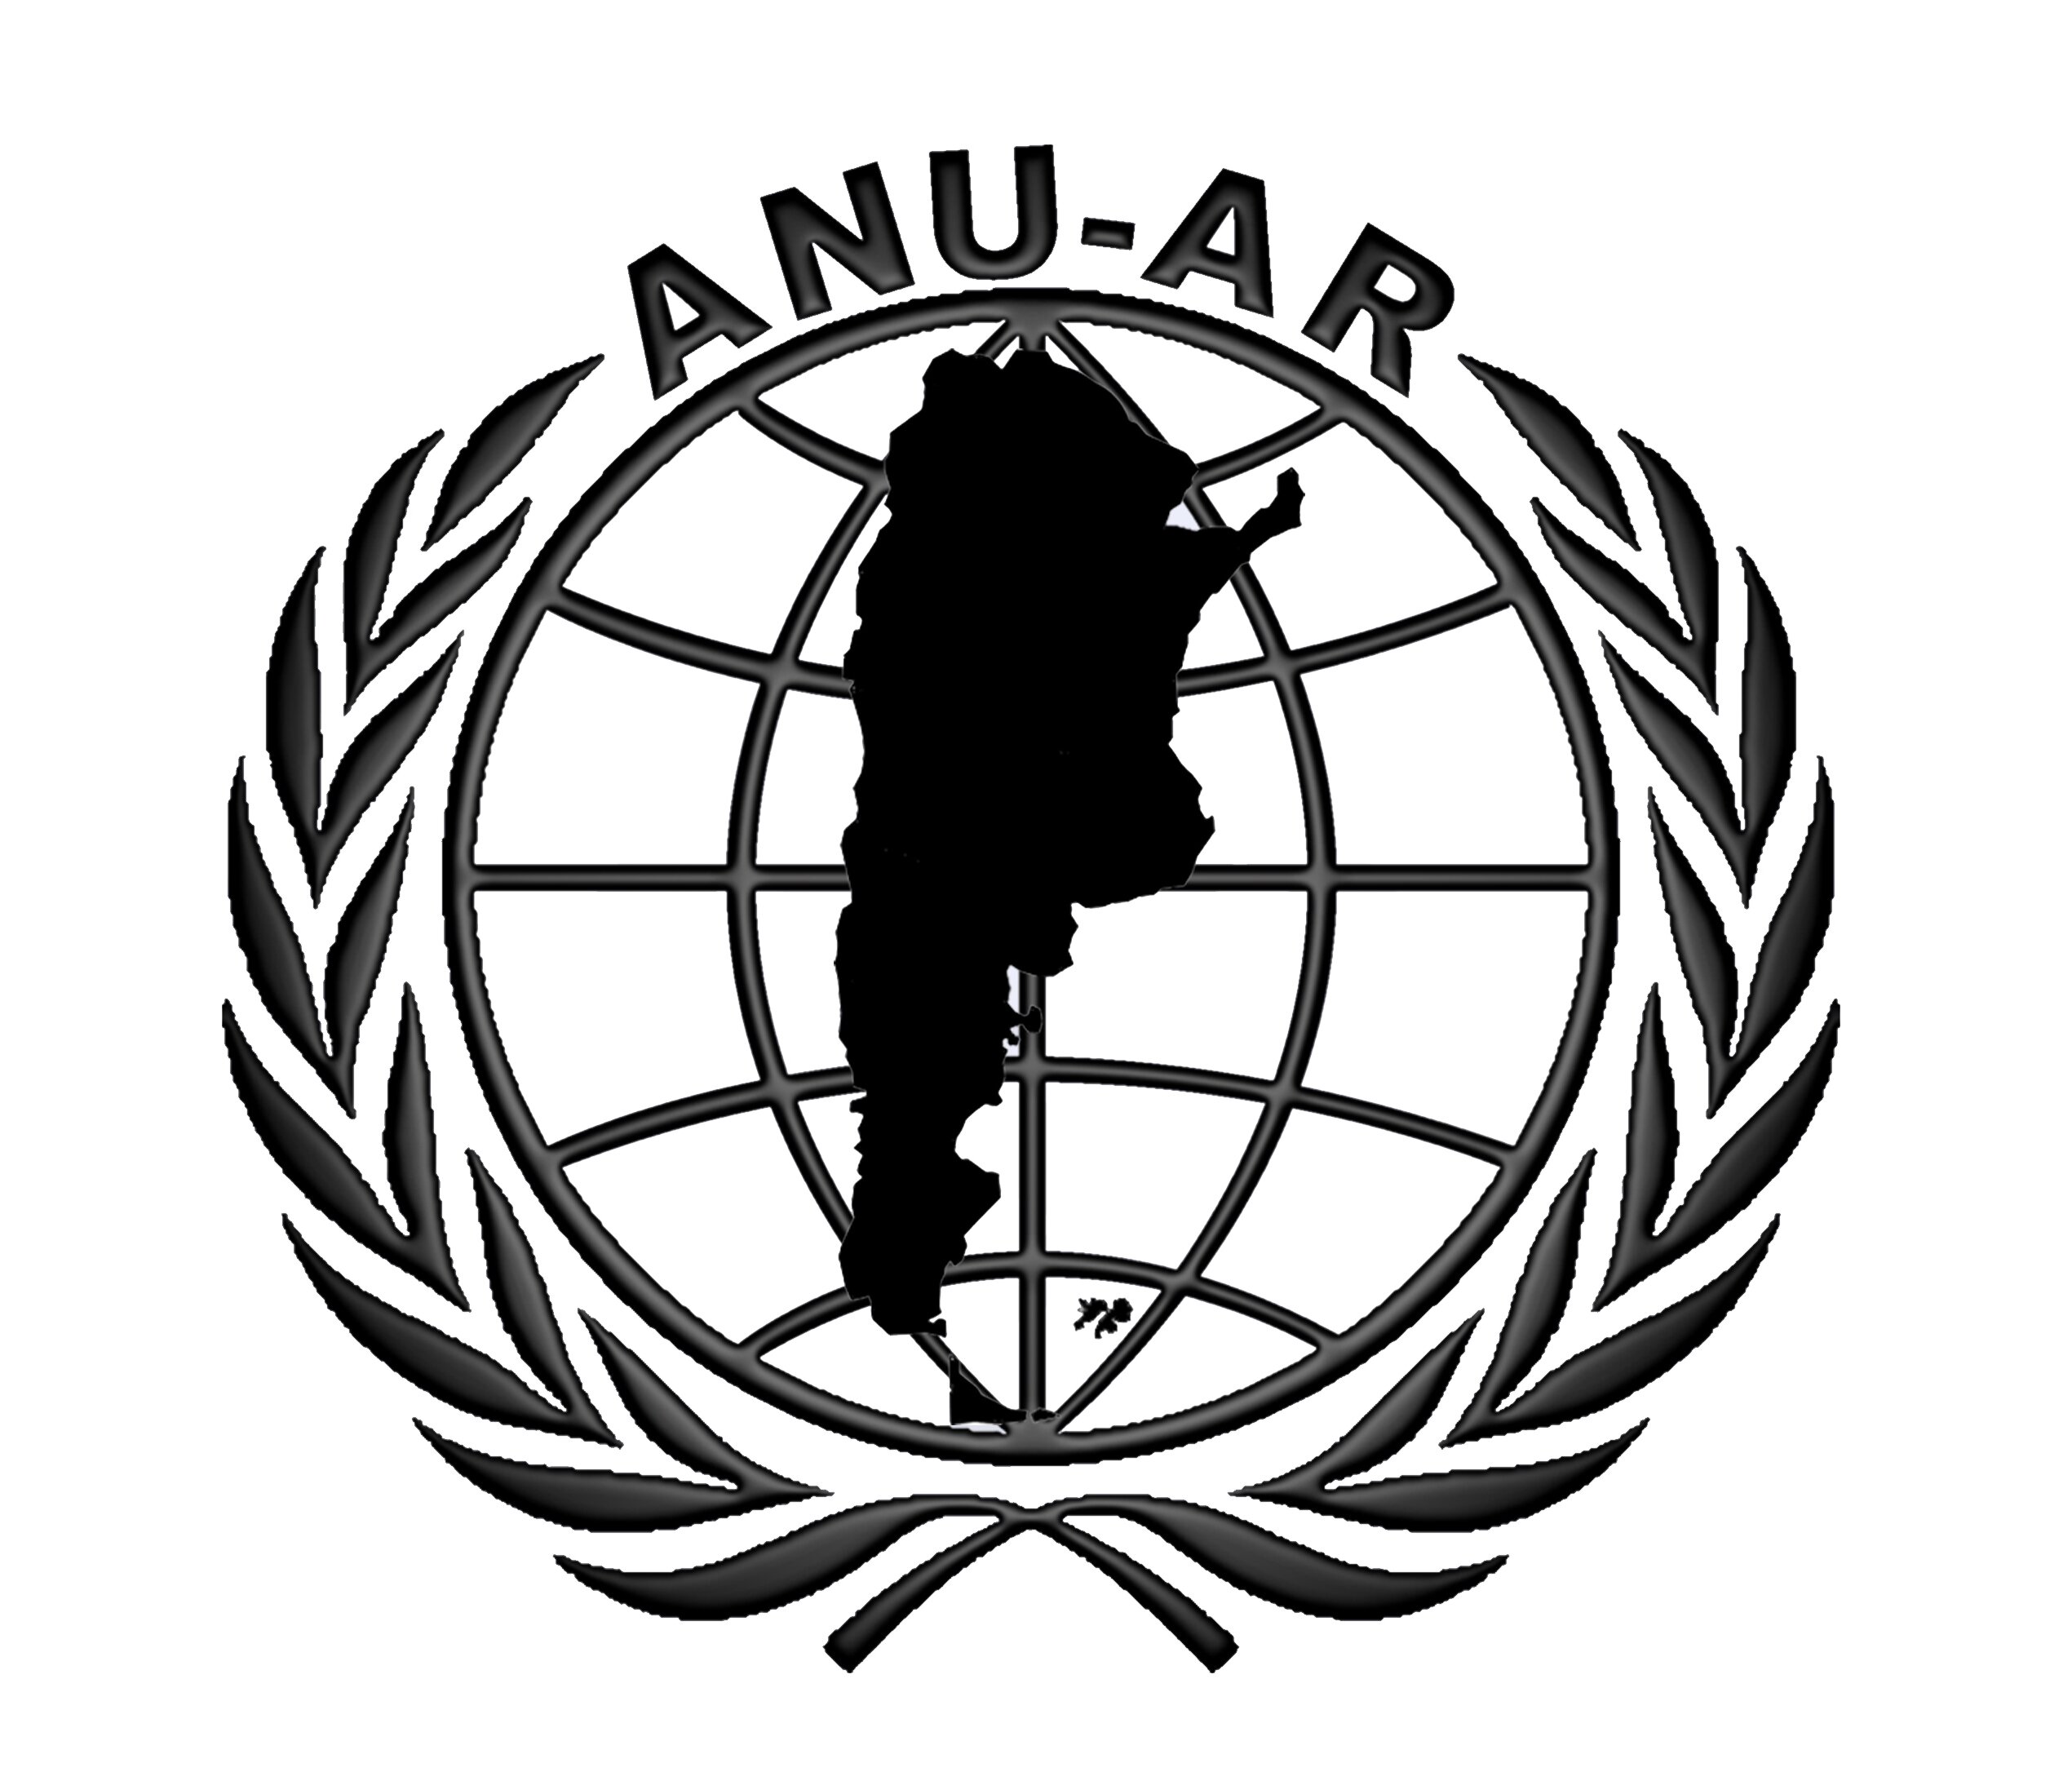 Asociación para las Naciones Unidas de la República Argentina (ANU-AR) - Buenos Aires / Argentina